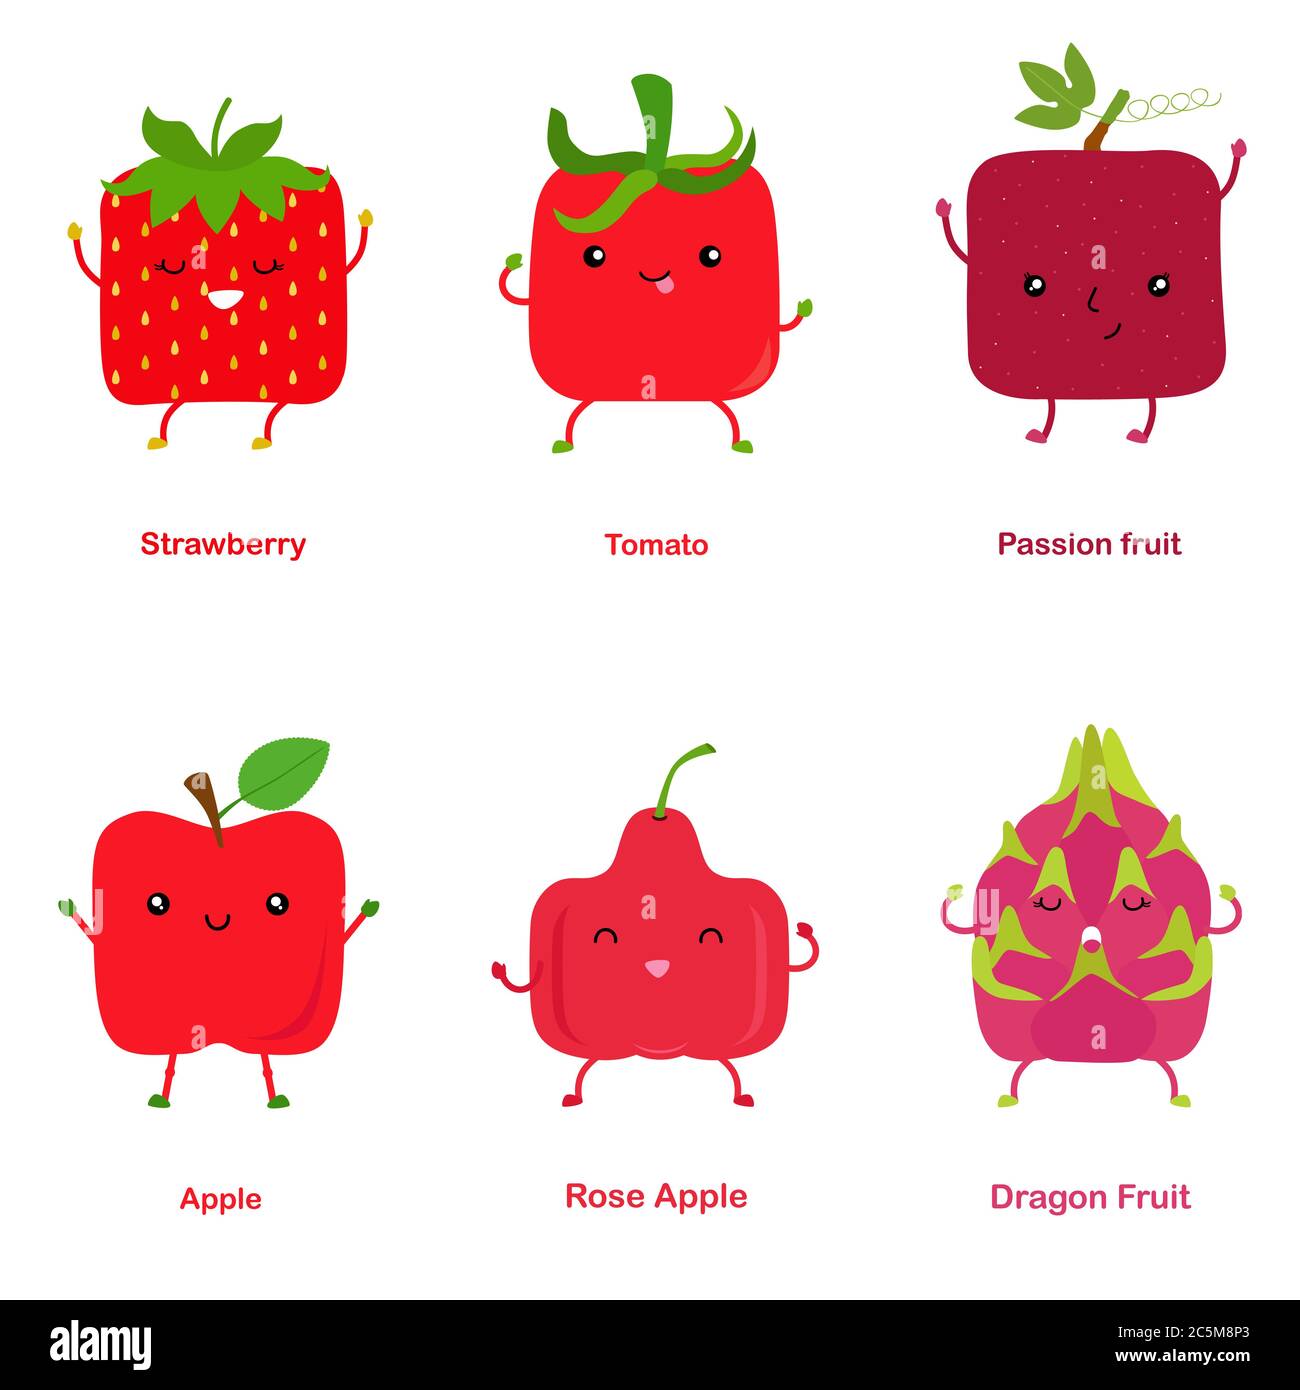 Niedliche Vektor von quadratischen geformt lächelnd Obst, Gemüse mit glücklichem Gesicht in roter Farbe - Erdbeer Tomate Passion Fruit Apple Rose Apple Dragon Fruit. Co Stock Vektor